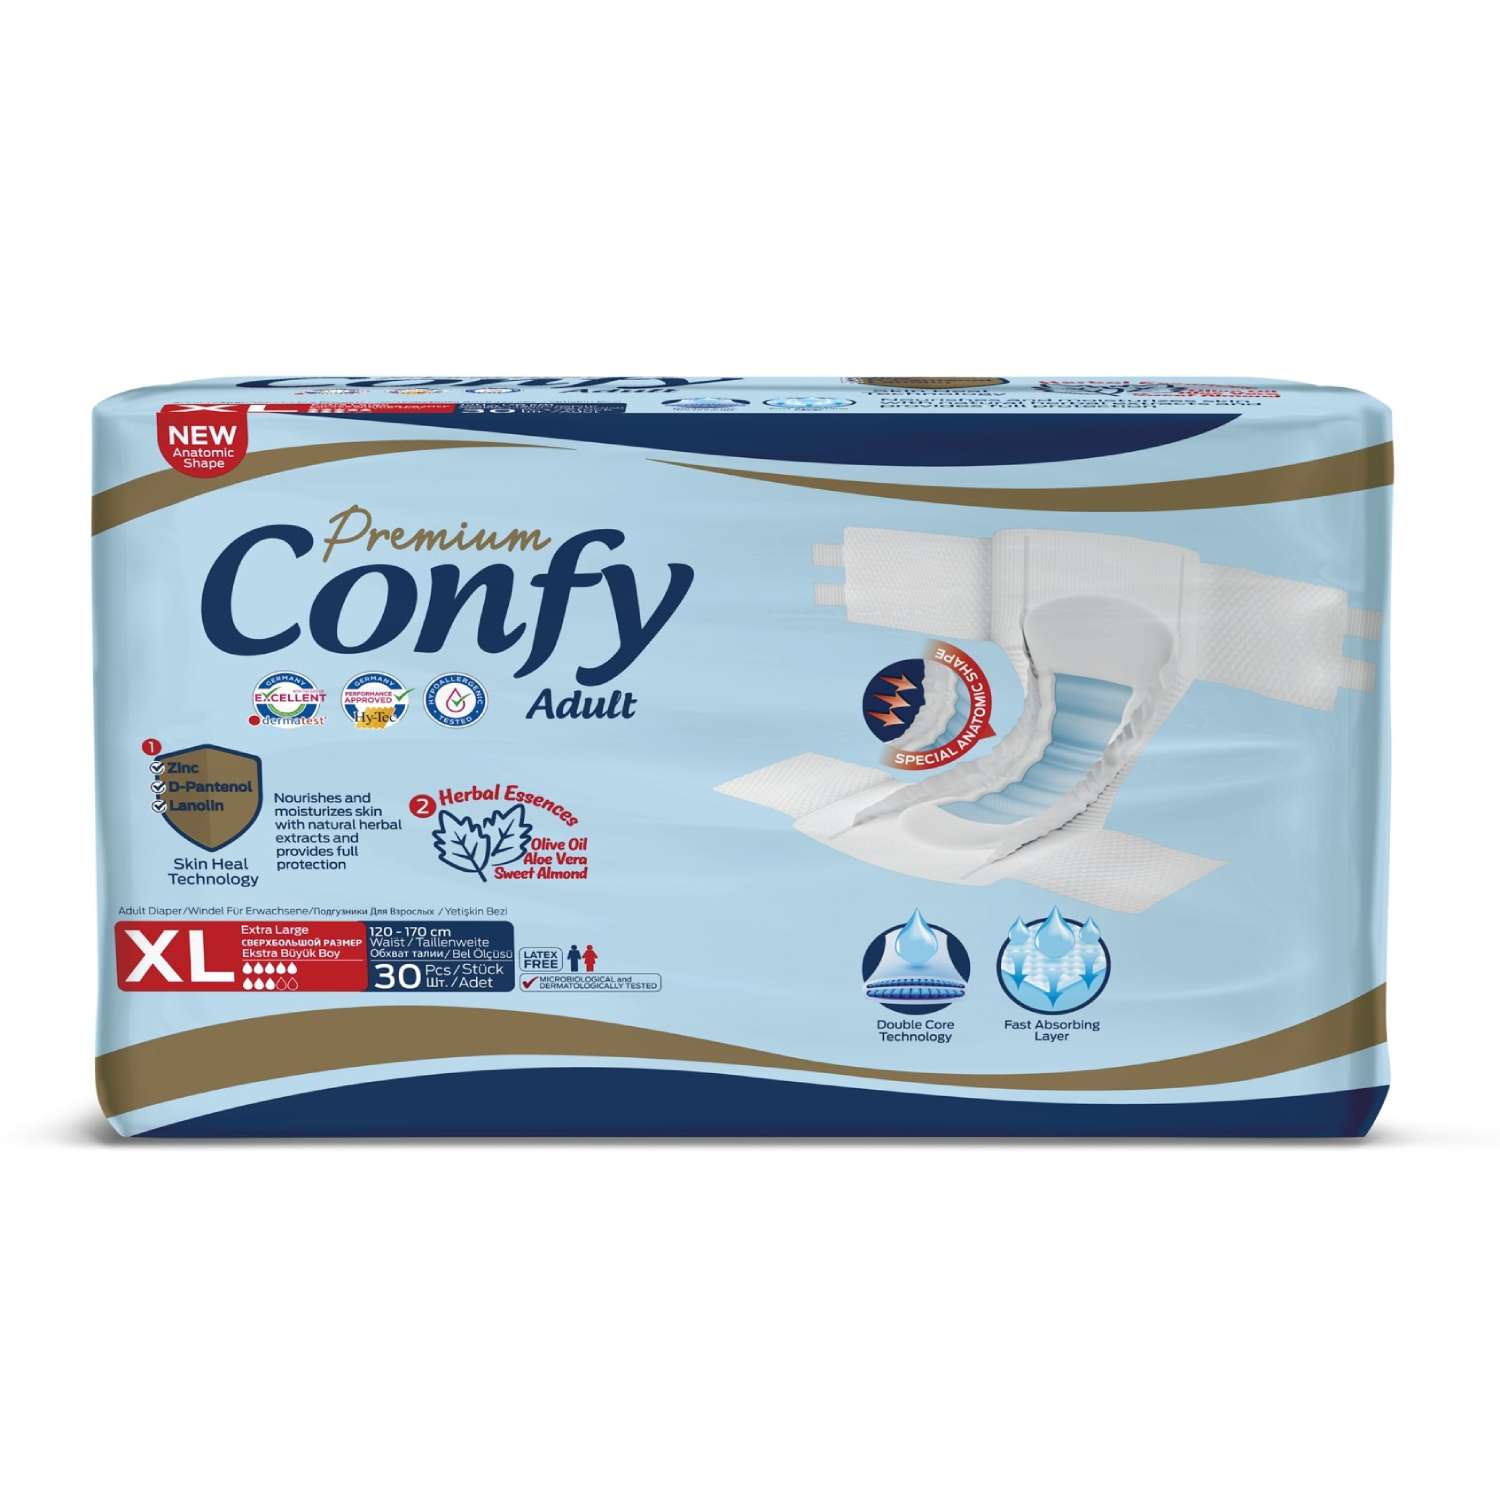 Подгузники для взрослых CONFY Adult Premium XL30 размер XL талия 120-170 см 30 шт - фото 1